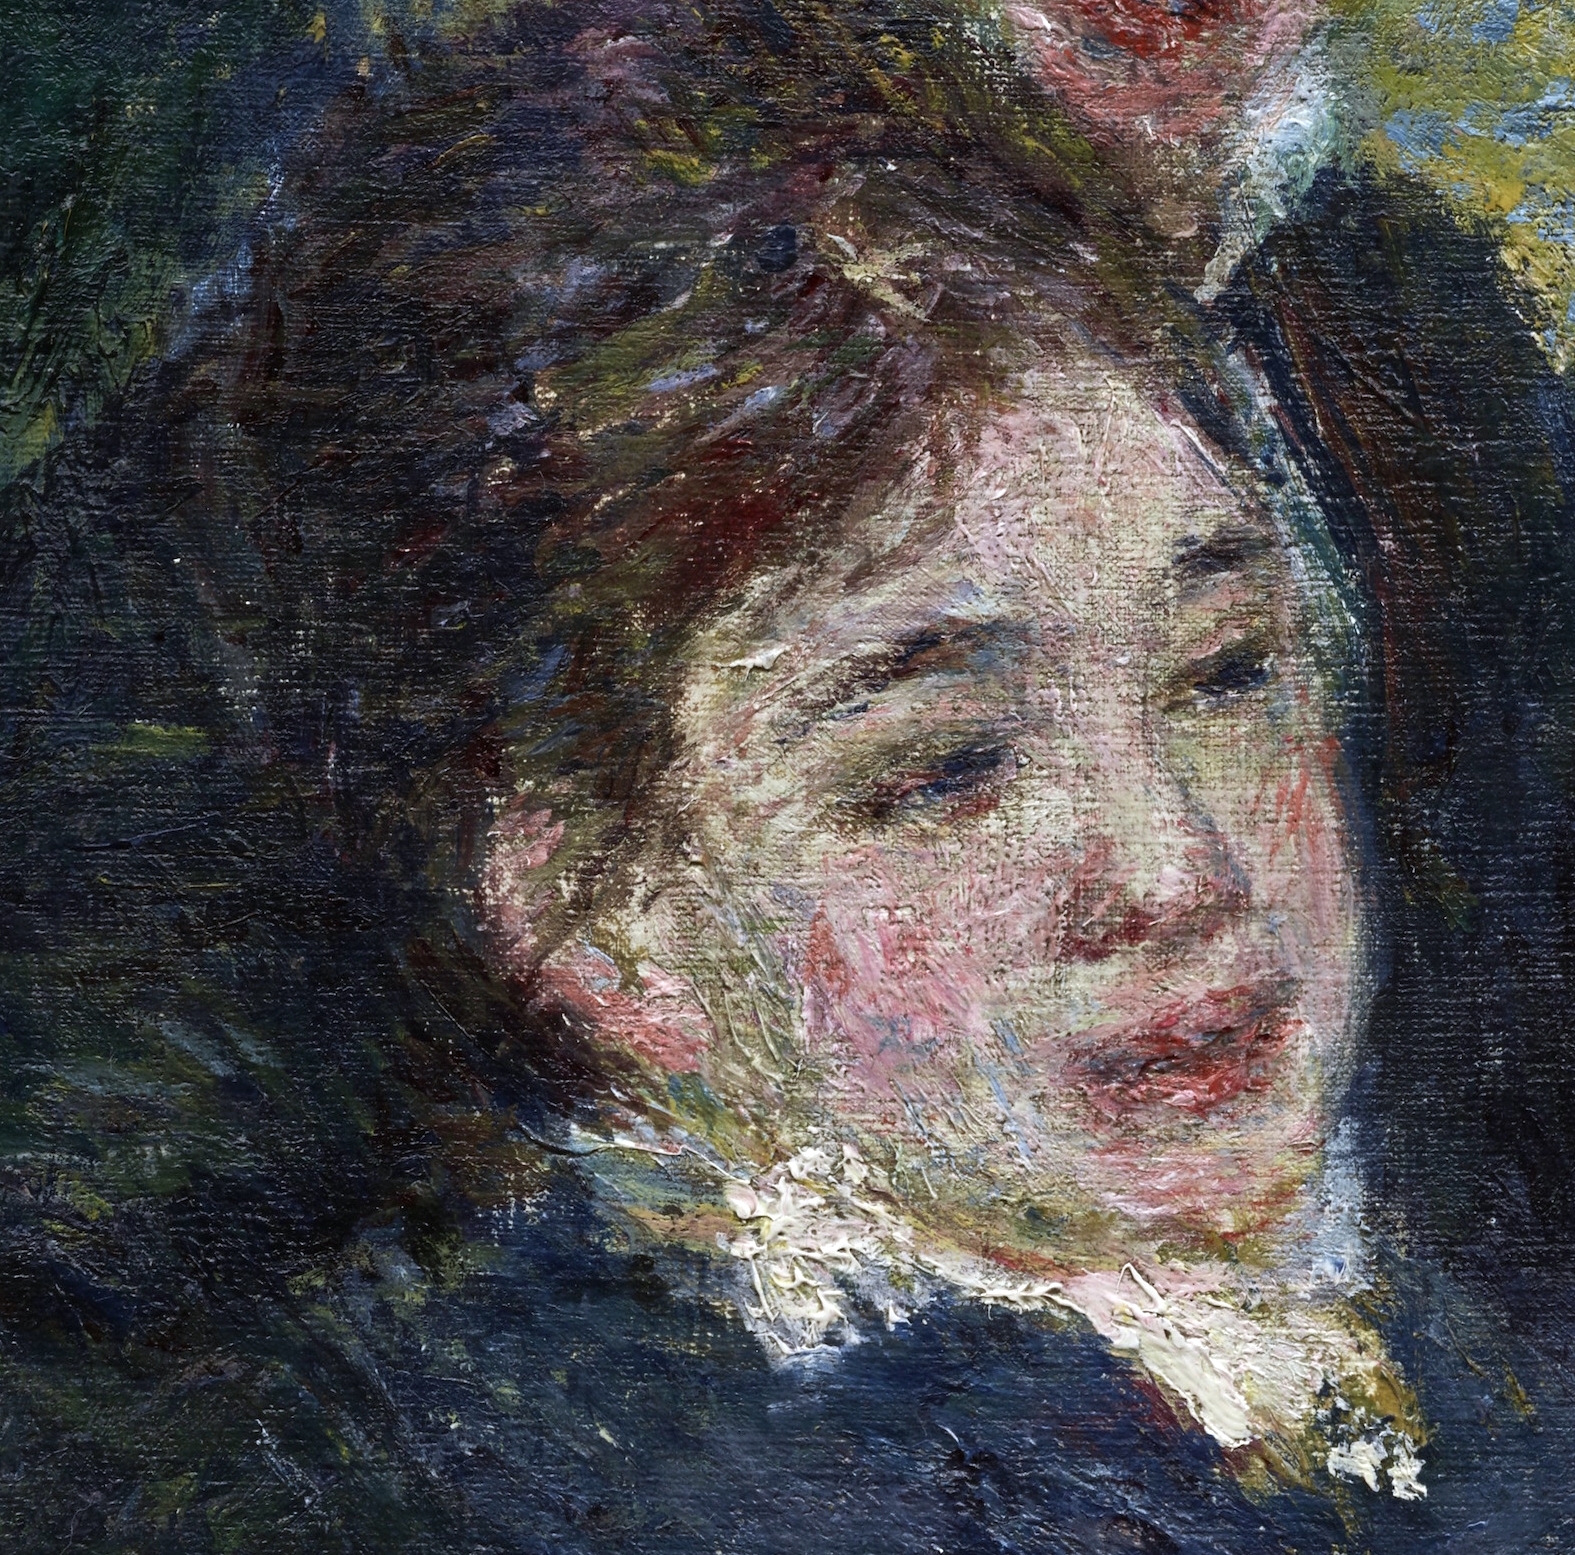 Pierre+Auguste+Renoir-1841-1-19 (971).jpg